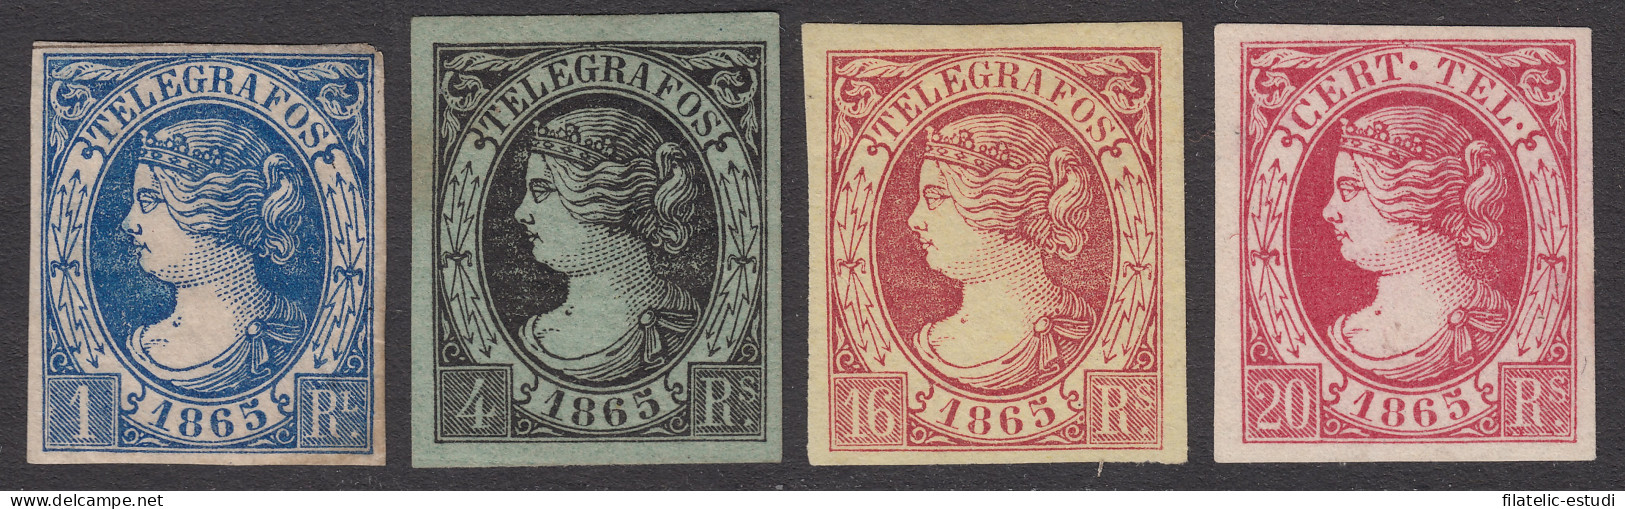 España Spain Telégrafos 5/8 1865 Isabel II  MH - Fiscaux-postaux